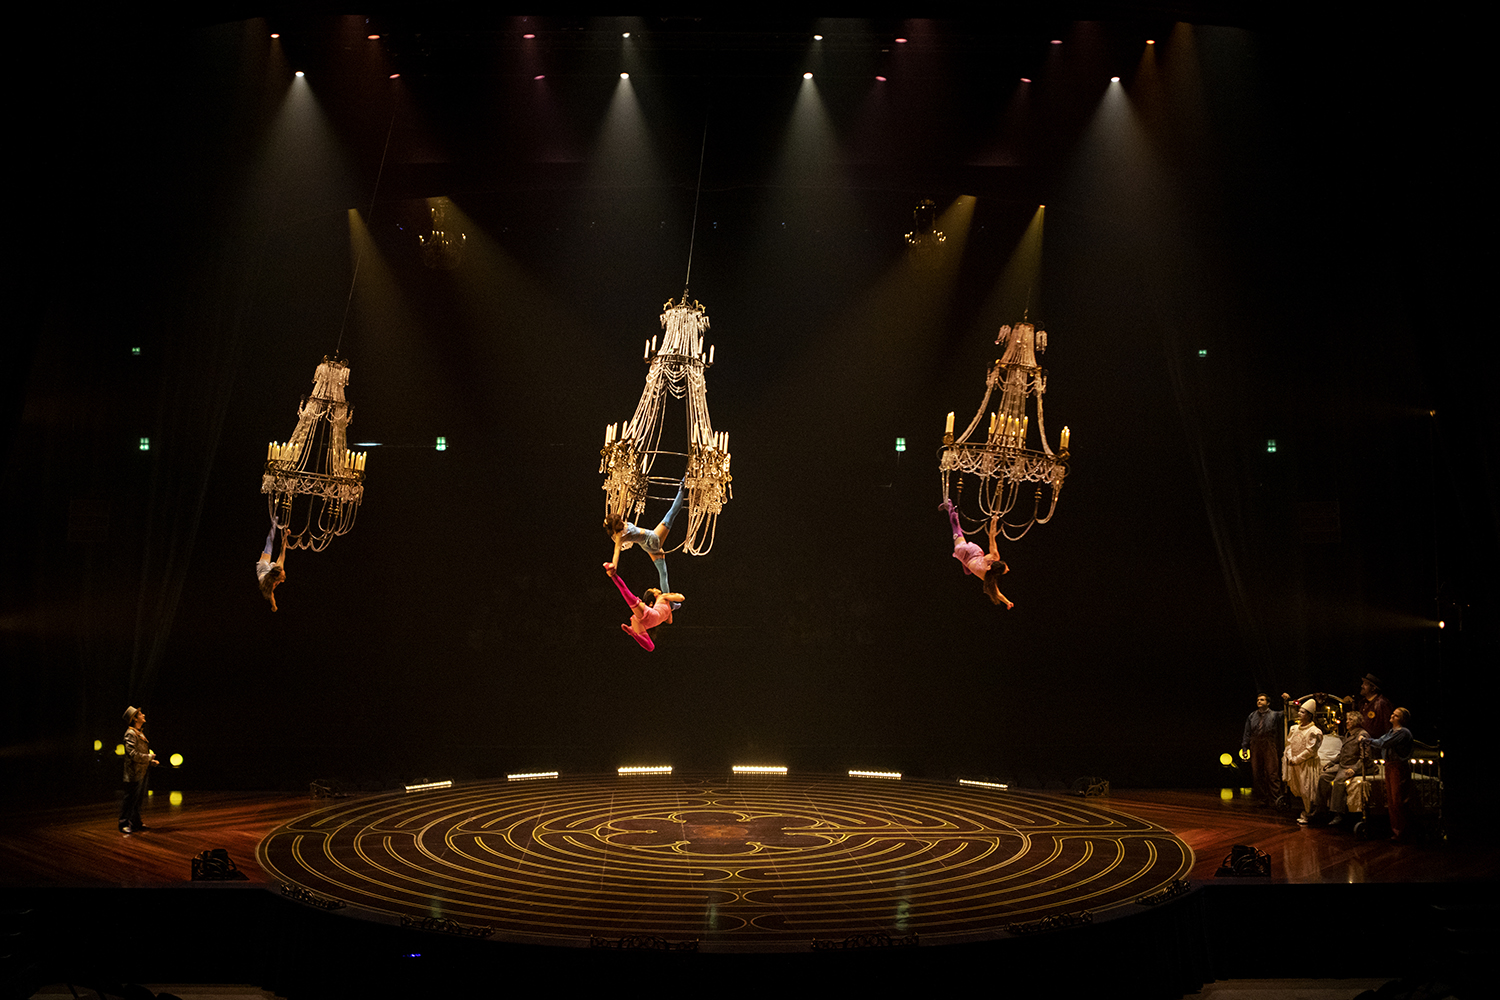 Rabais sur le spectacle Corteo du Cirque du Soleil, le cadeau parfait!